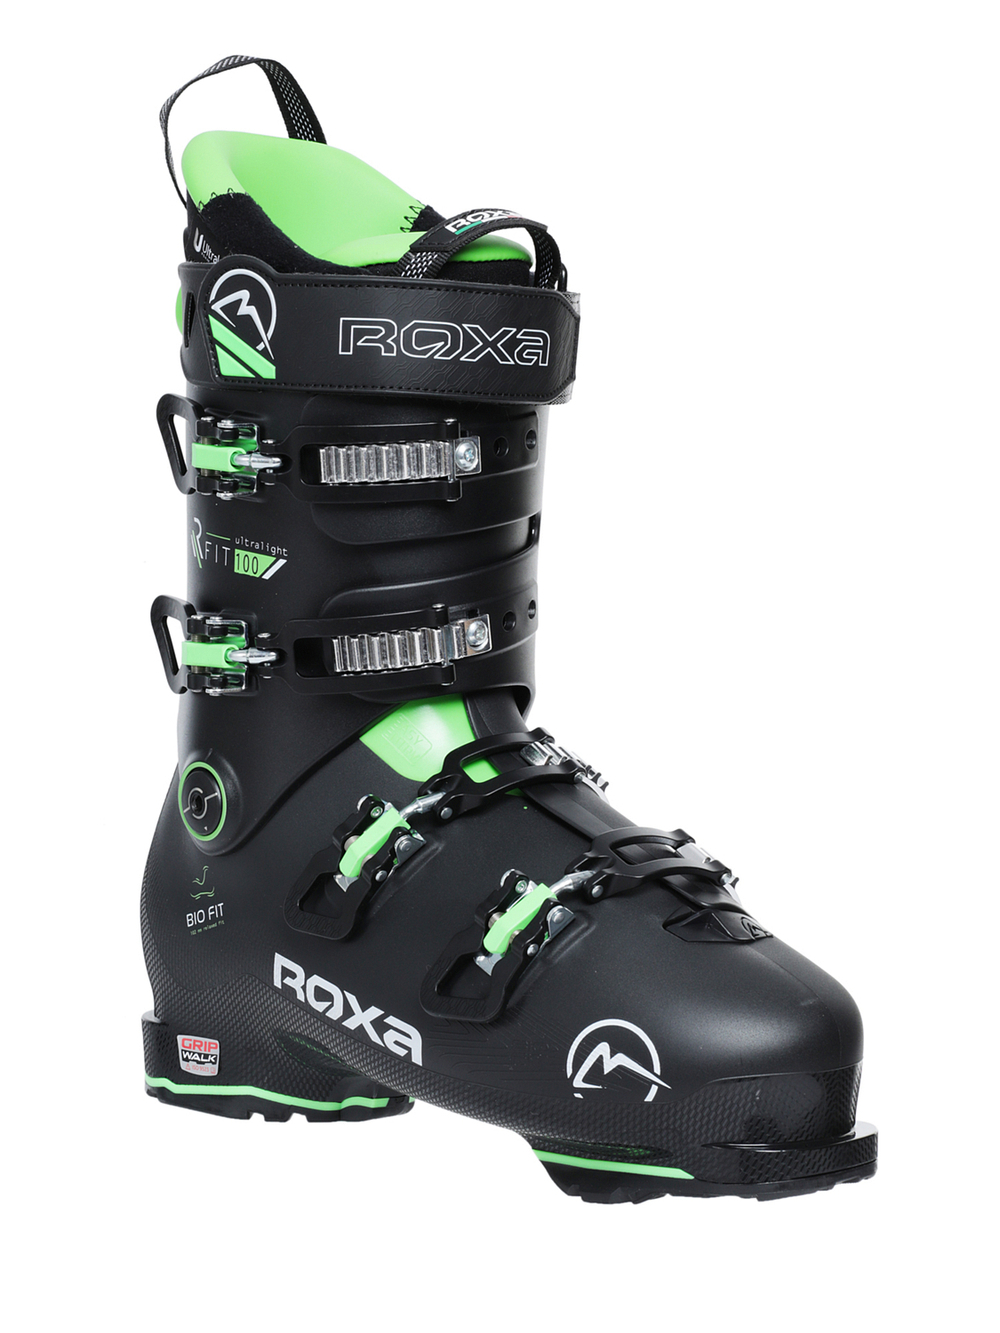 Горнолыжные ботинки ROXA Rfit 100 Gw Black/Green (см:28,5)